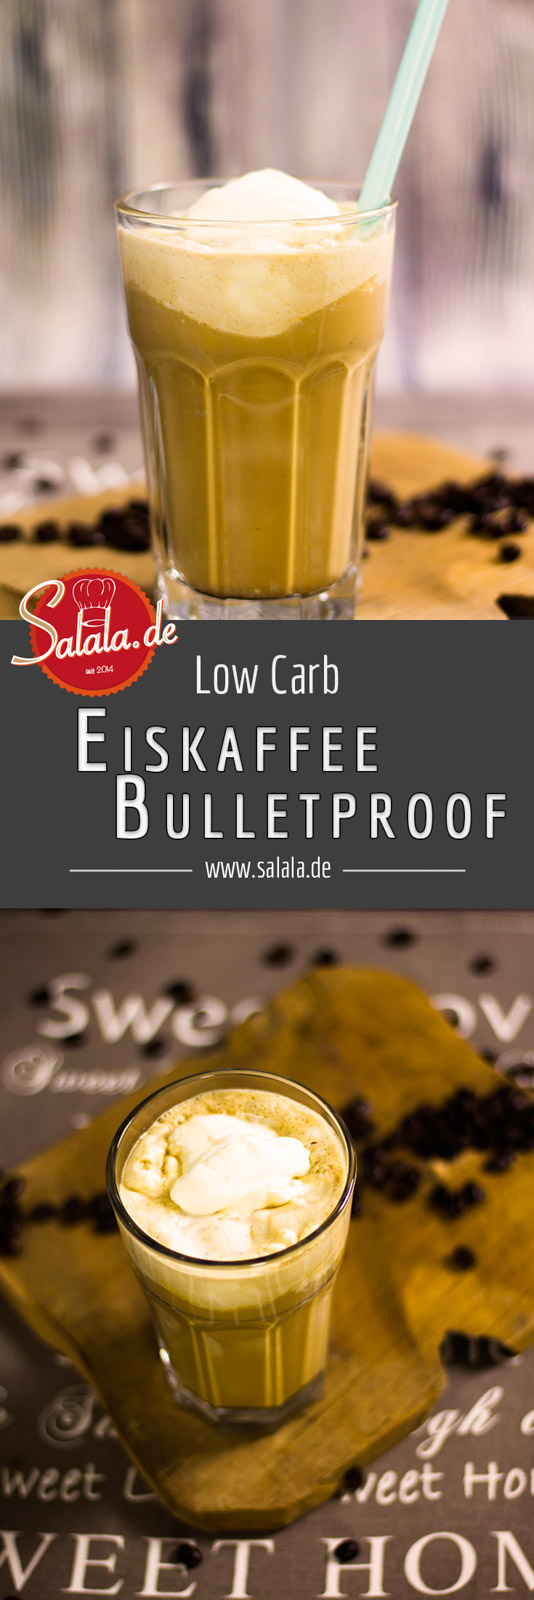 Bulletproof Eiskaffee Low Carb ohne Zucker Kugelsicherer Eiskaffee Rezept